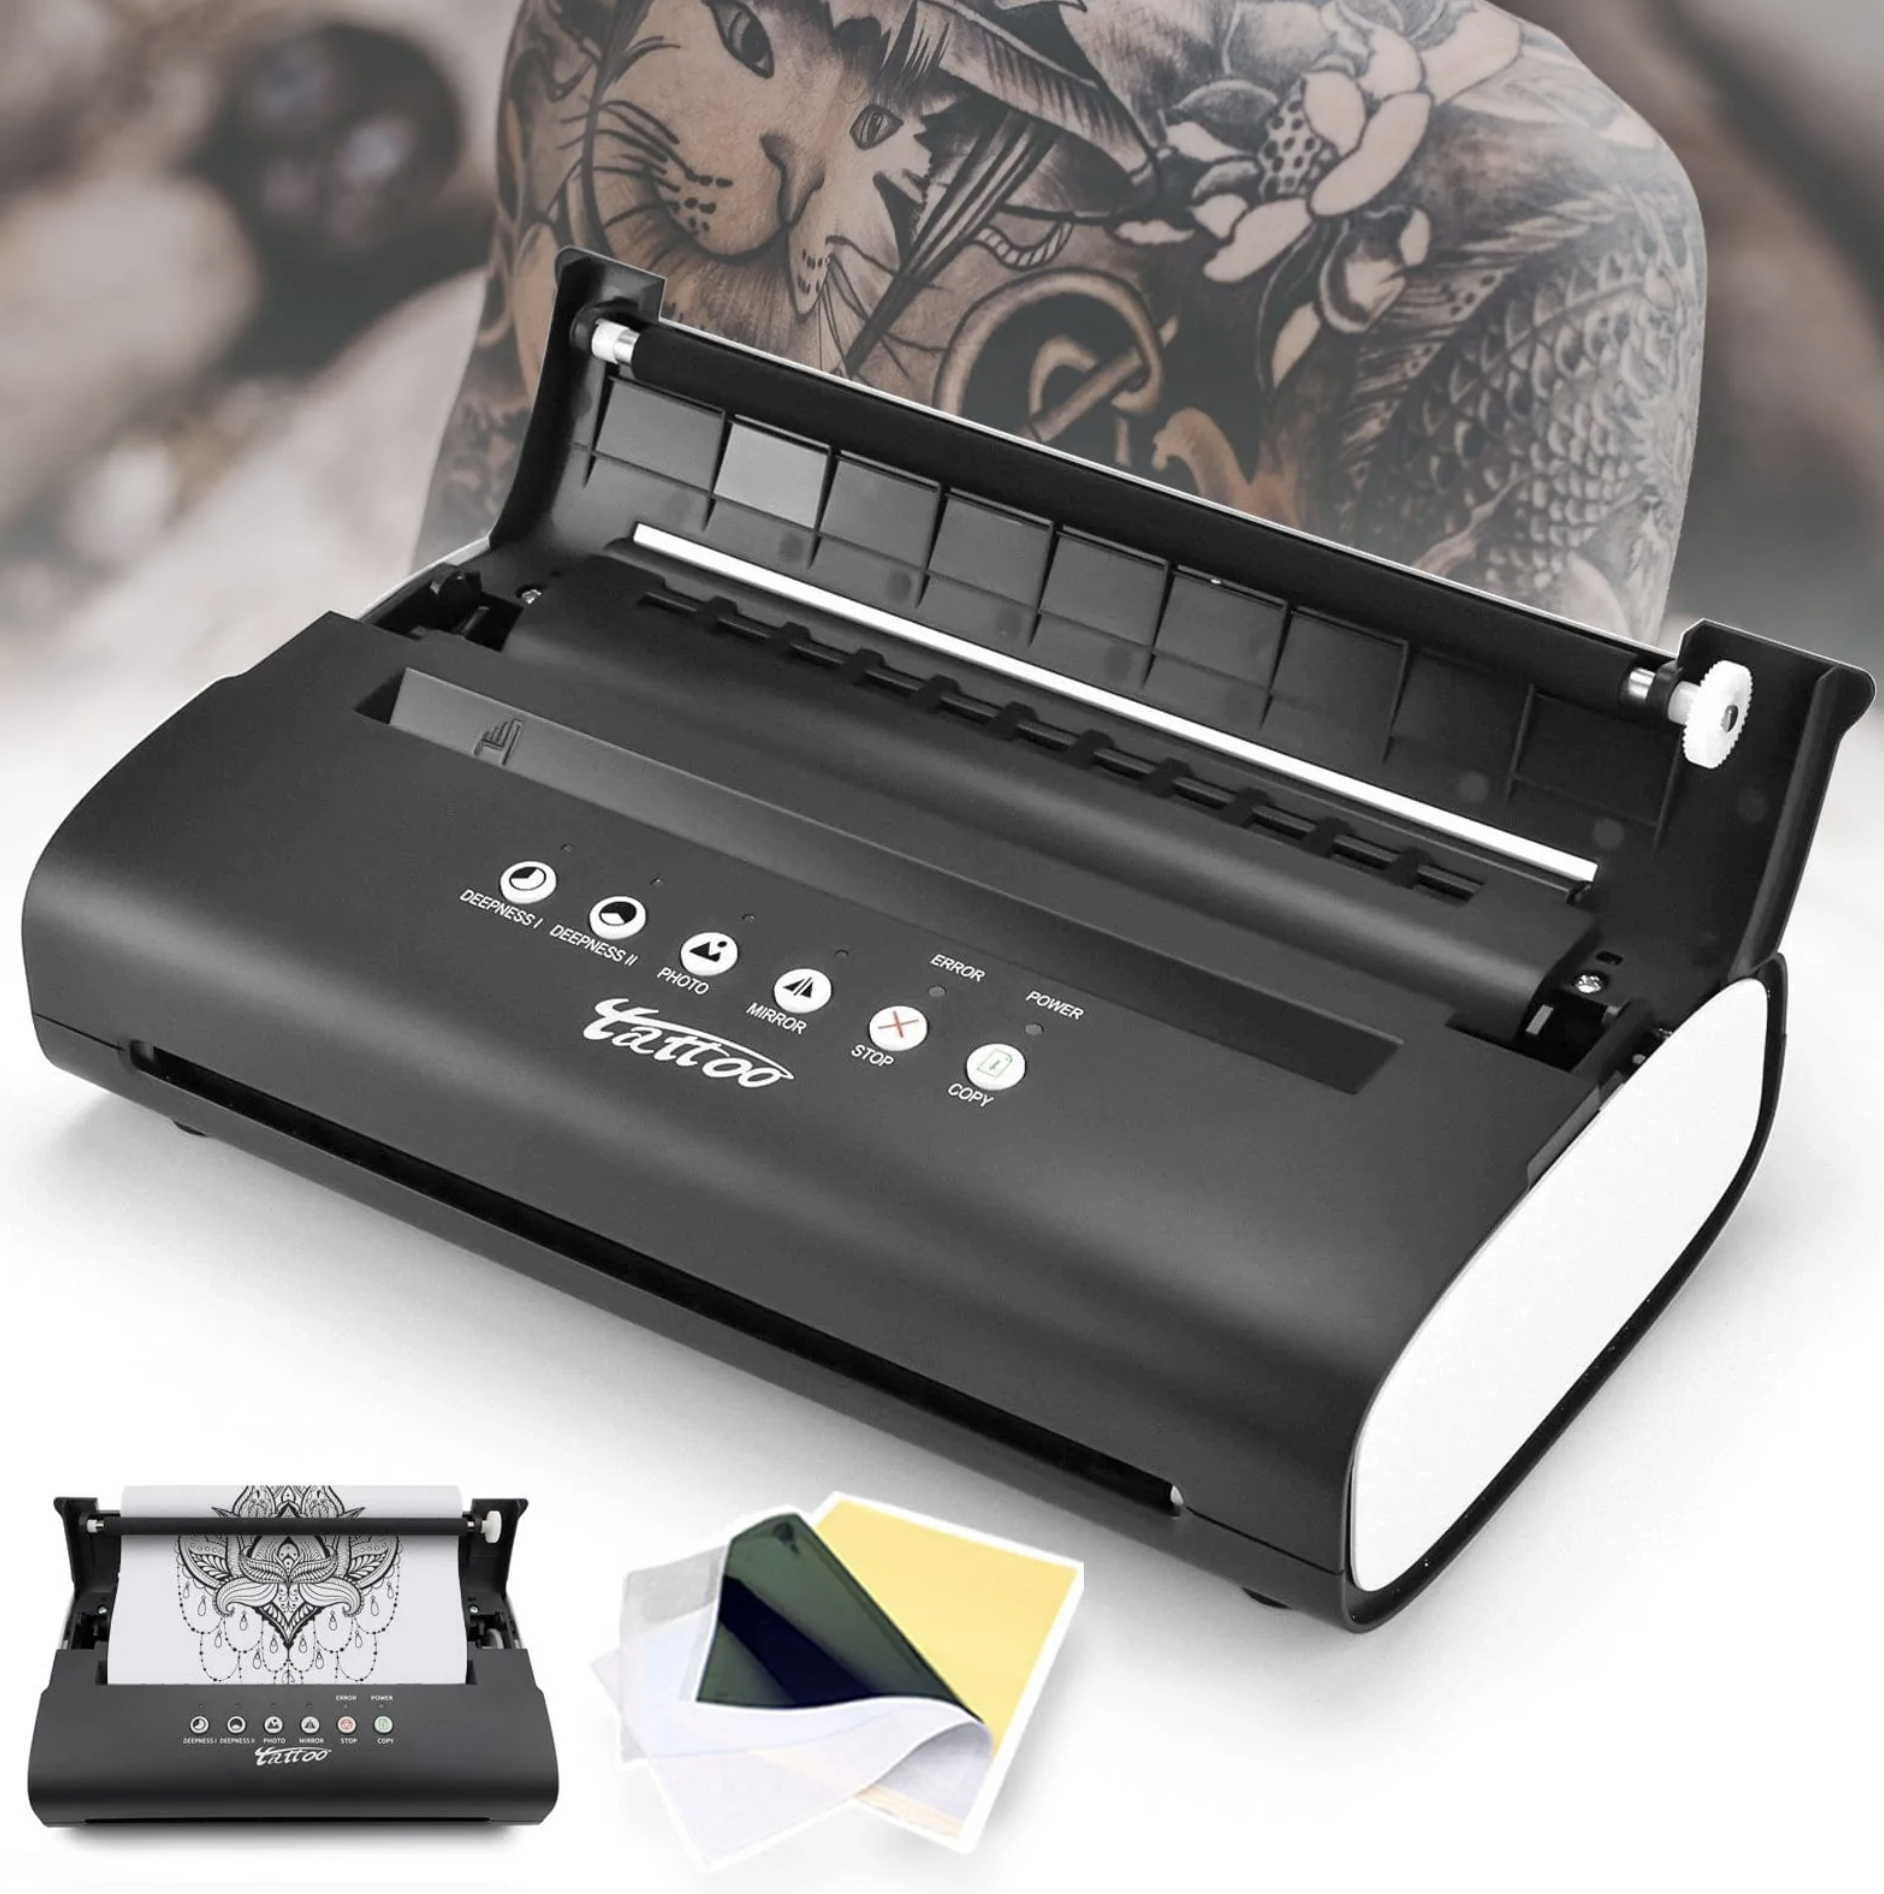 tattoo printer